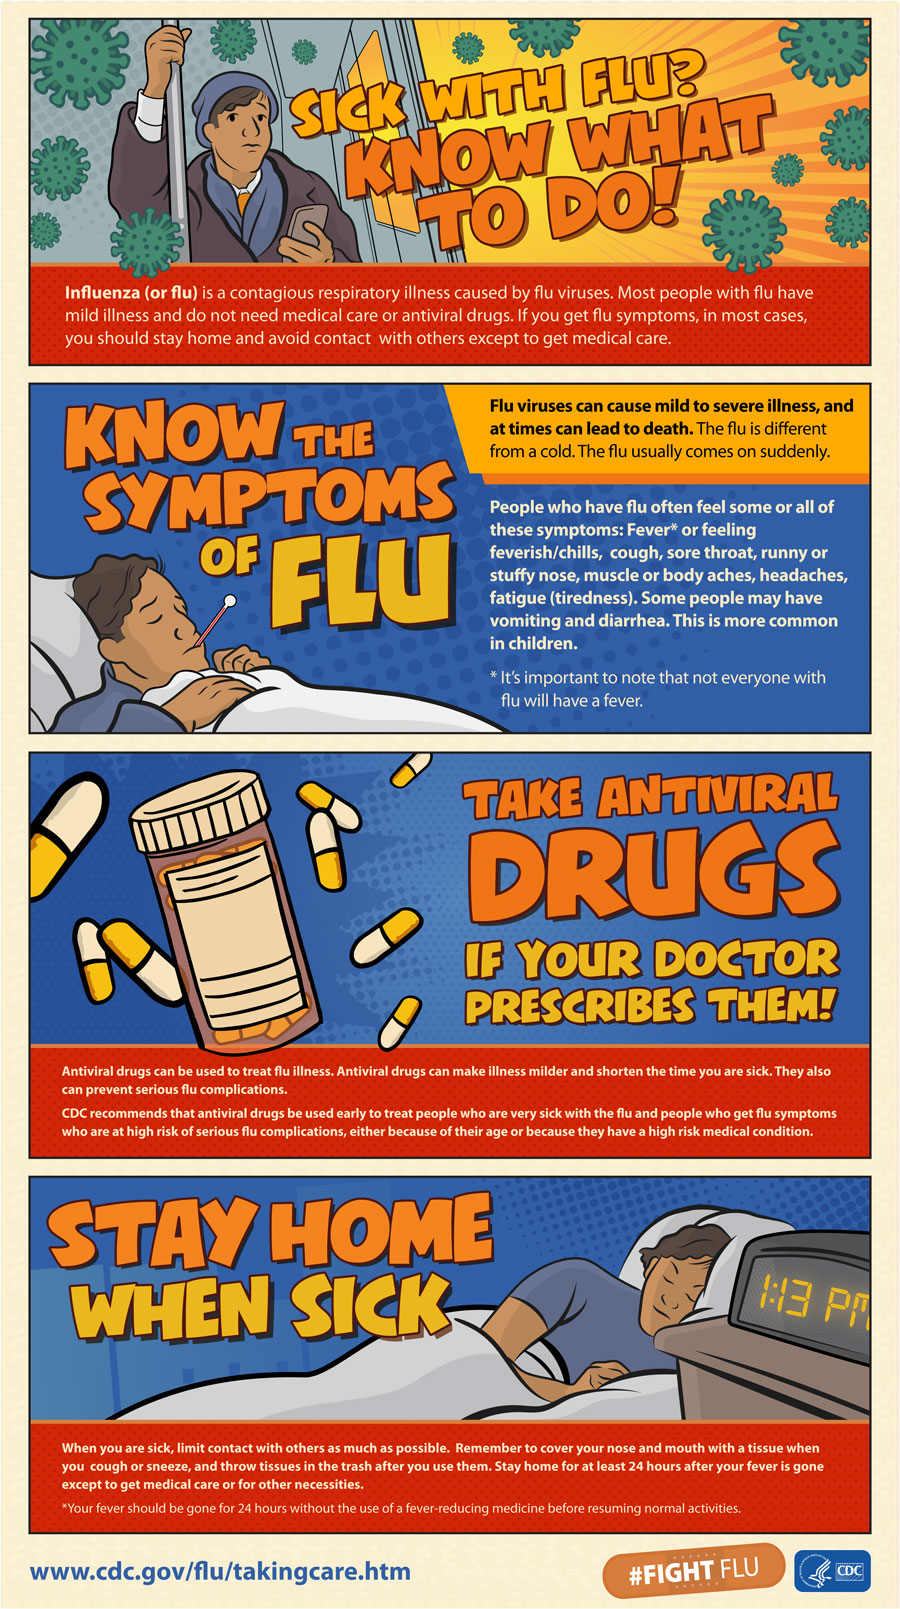 When is Flu Season?